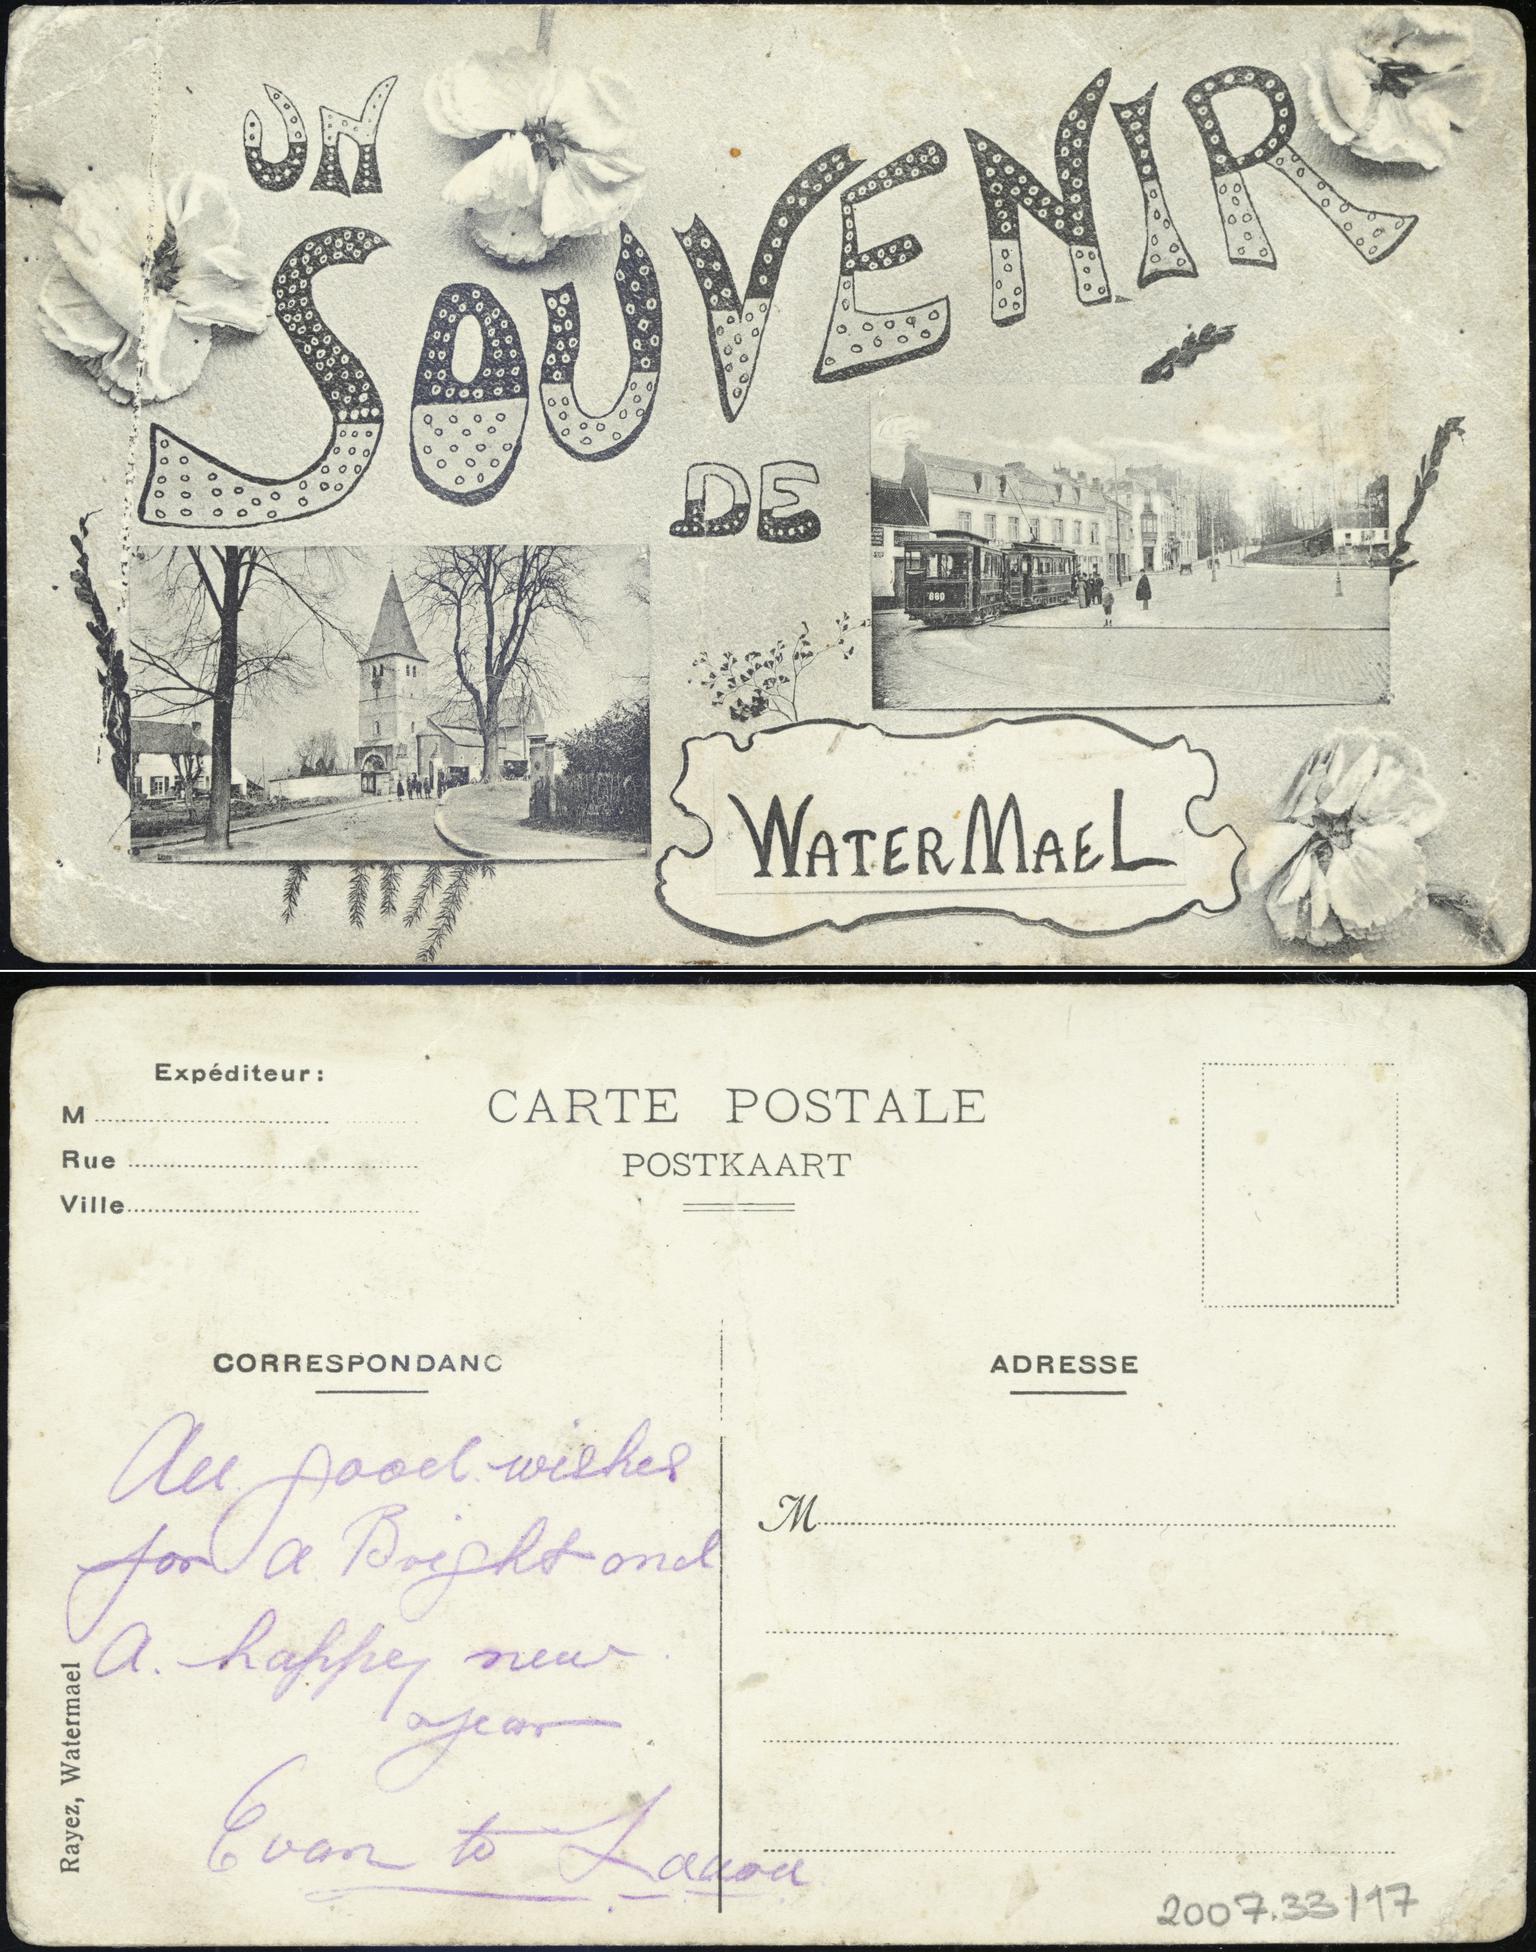 Un Souvenir de Watermael (postcard)